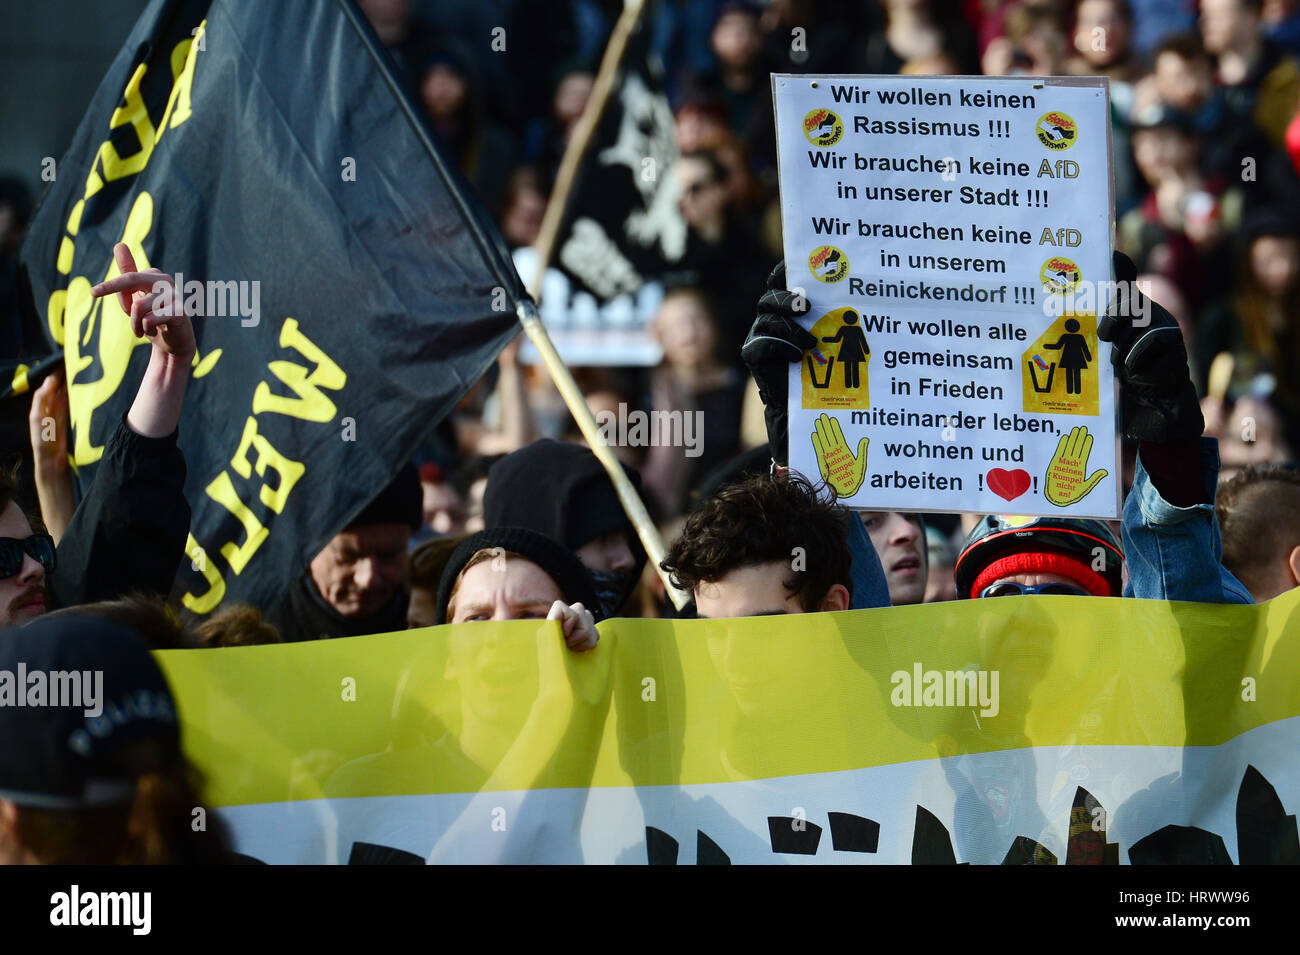 Berlín, Alemania. 04 Mar, 2017. Antirracistas protesta contra una manifestación de extremistas de derecha, organizado en torno al lema 'Merkel muss weg' ('Merkel debe ir') en Berlín, Alemania, 04 de marzo de 2017. Foto: Maurizio Gambarini/dpa/Alamy Live News Foto de stock